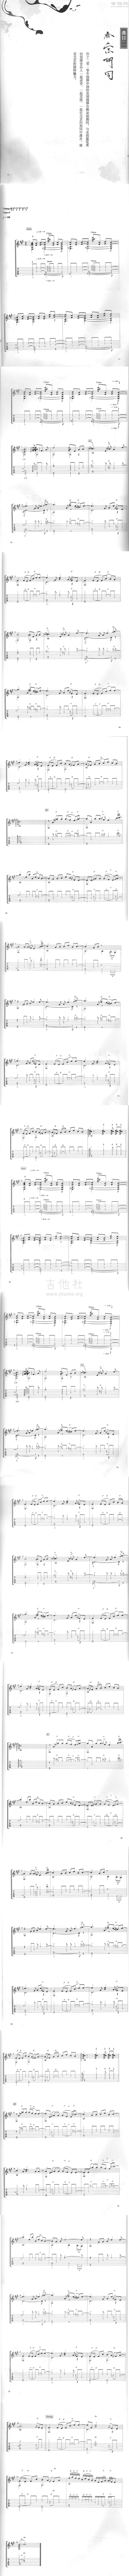 打印:北京胡同（原版扫描谱）吉他谱_走音(曹思义)_åäº¬è¡å.jpg